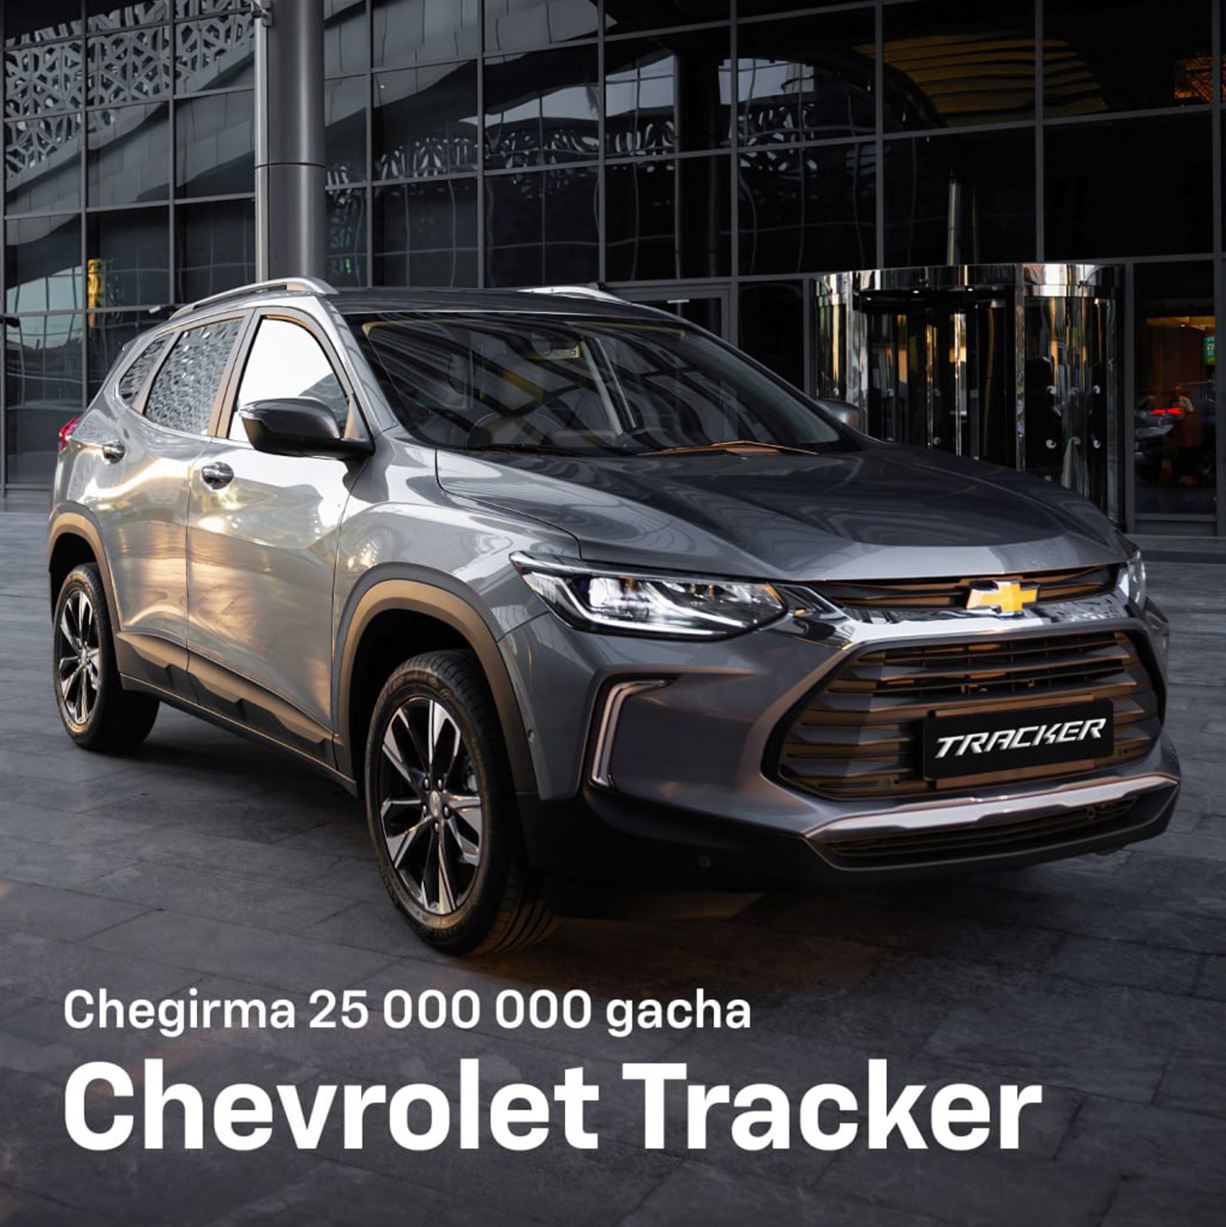 Chevrolet bilan yozga tayyorlaning: Chevrolet Tracker avtomobillari uchun 25 million so‘mgacha chegirma!